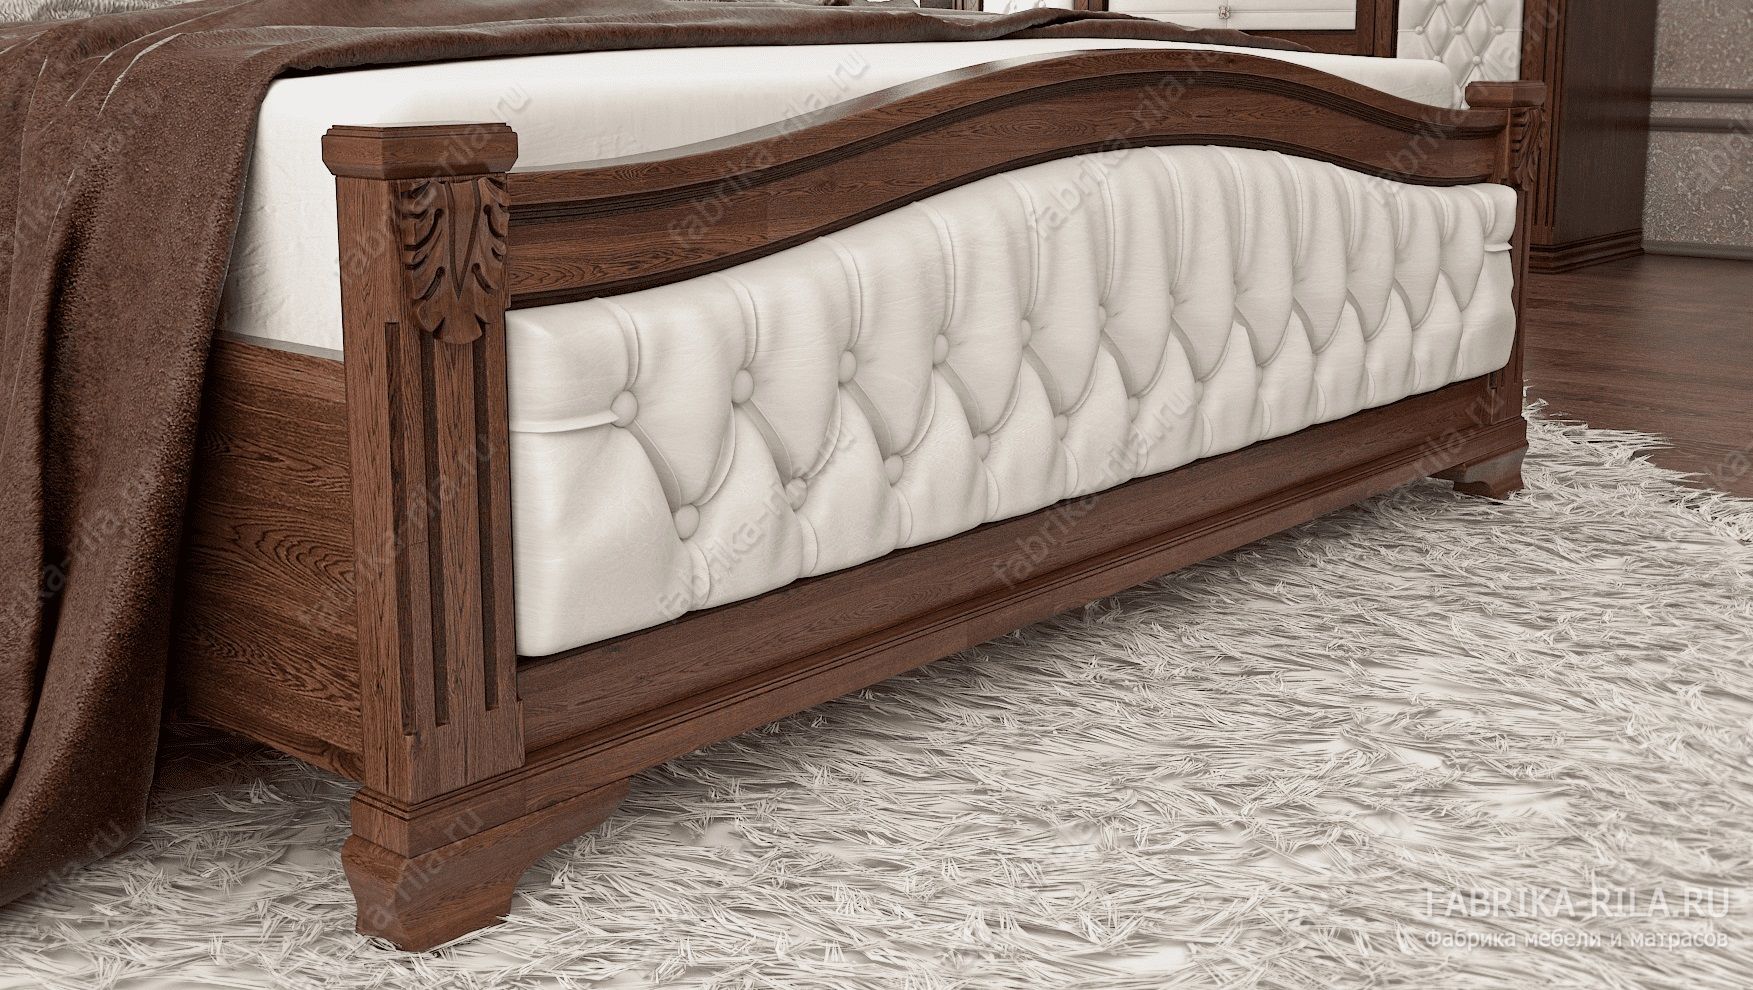 Кровать SONATA 1-MV — 90x190 см. из березы